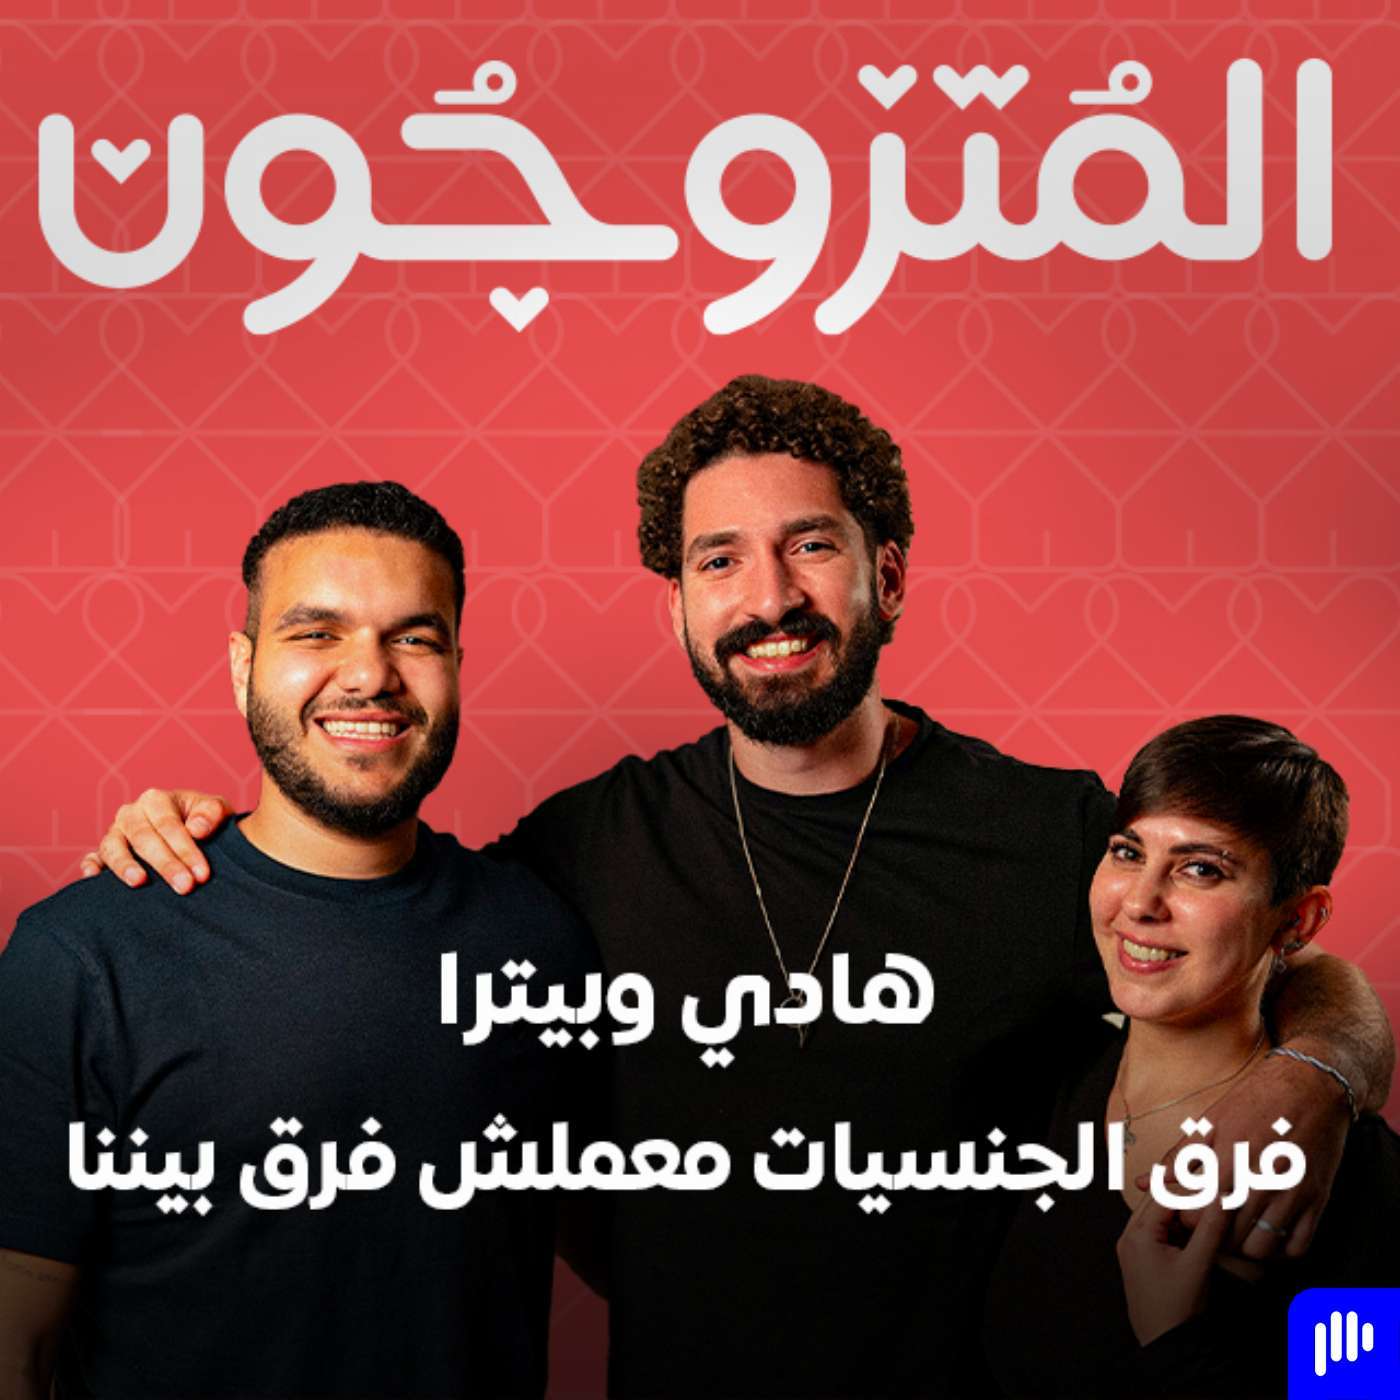 بودكاست المتزوجون الحلقة الأولى l فرق الجنسيات معملش فرق ما بيننا - هادي و بيترا